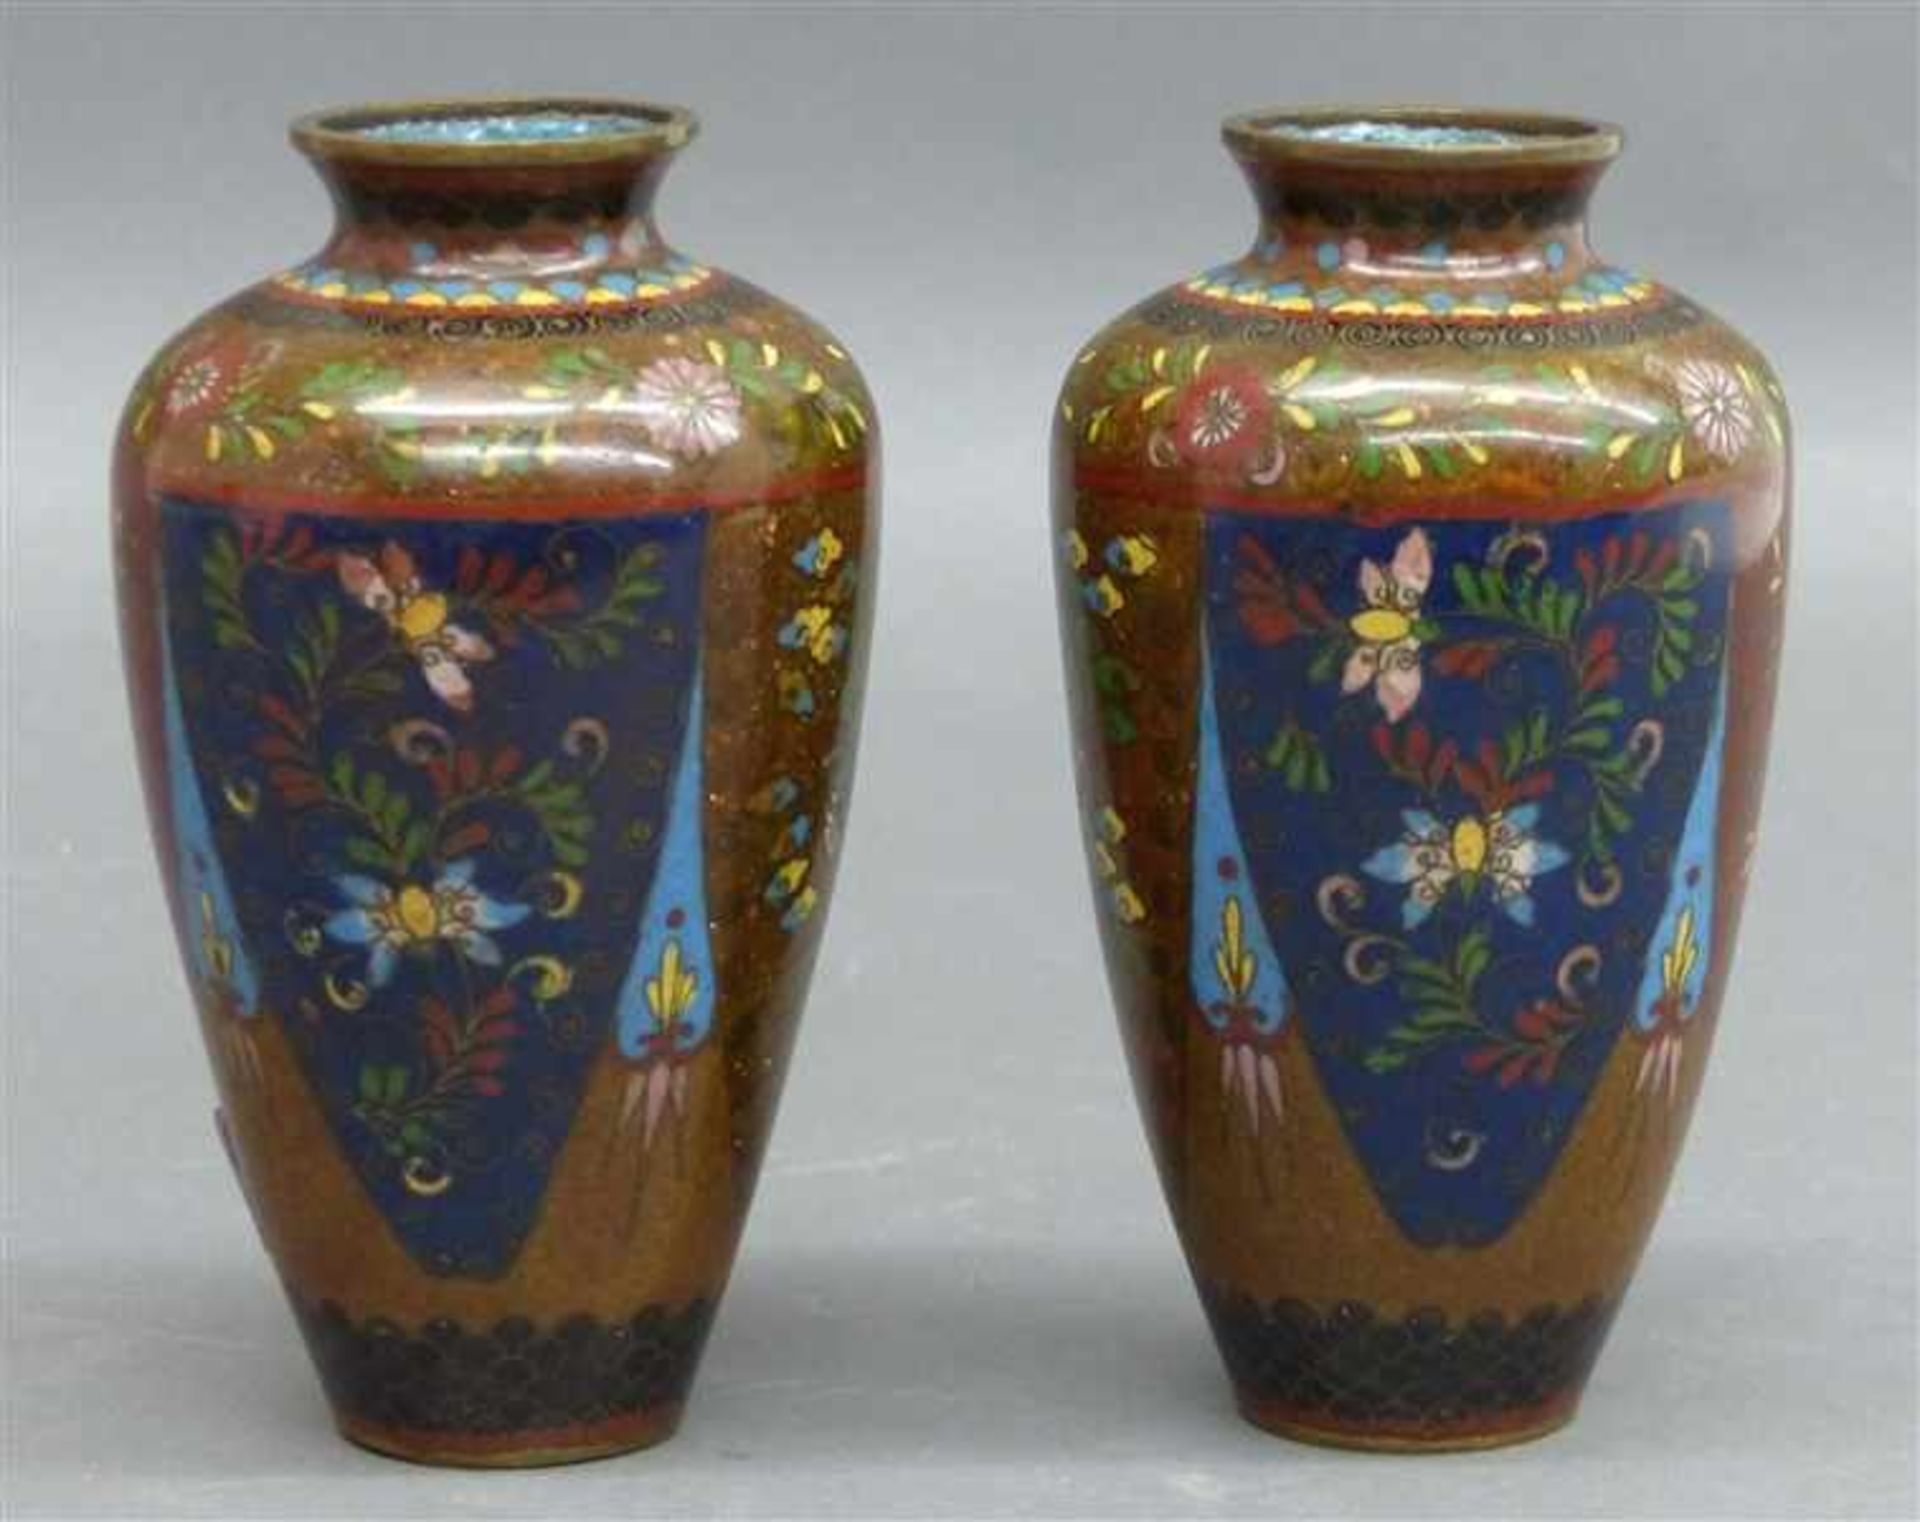 Paar CloisonnevasenChina, um 1900, reiche florale und Tierbemalung, h 16 cm,